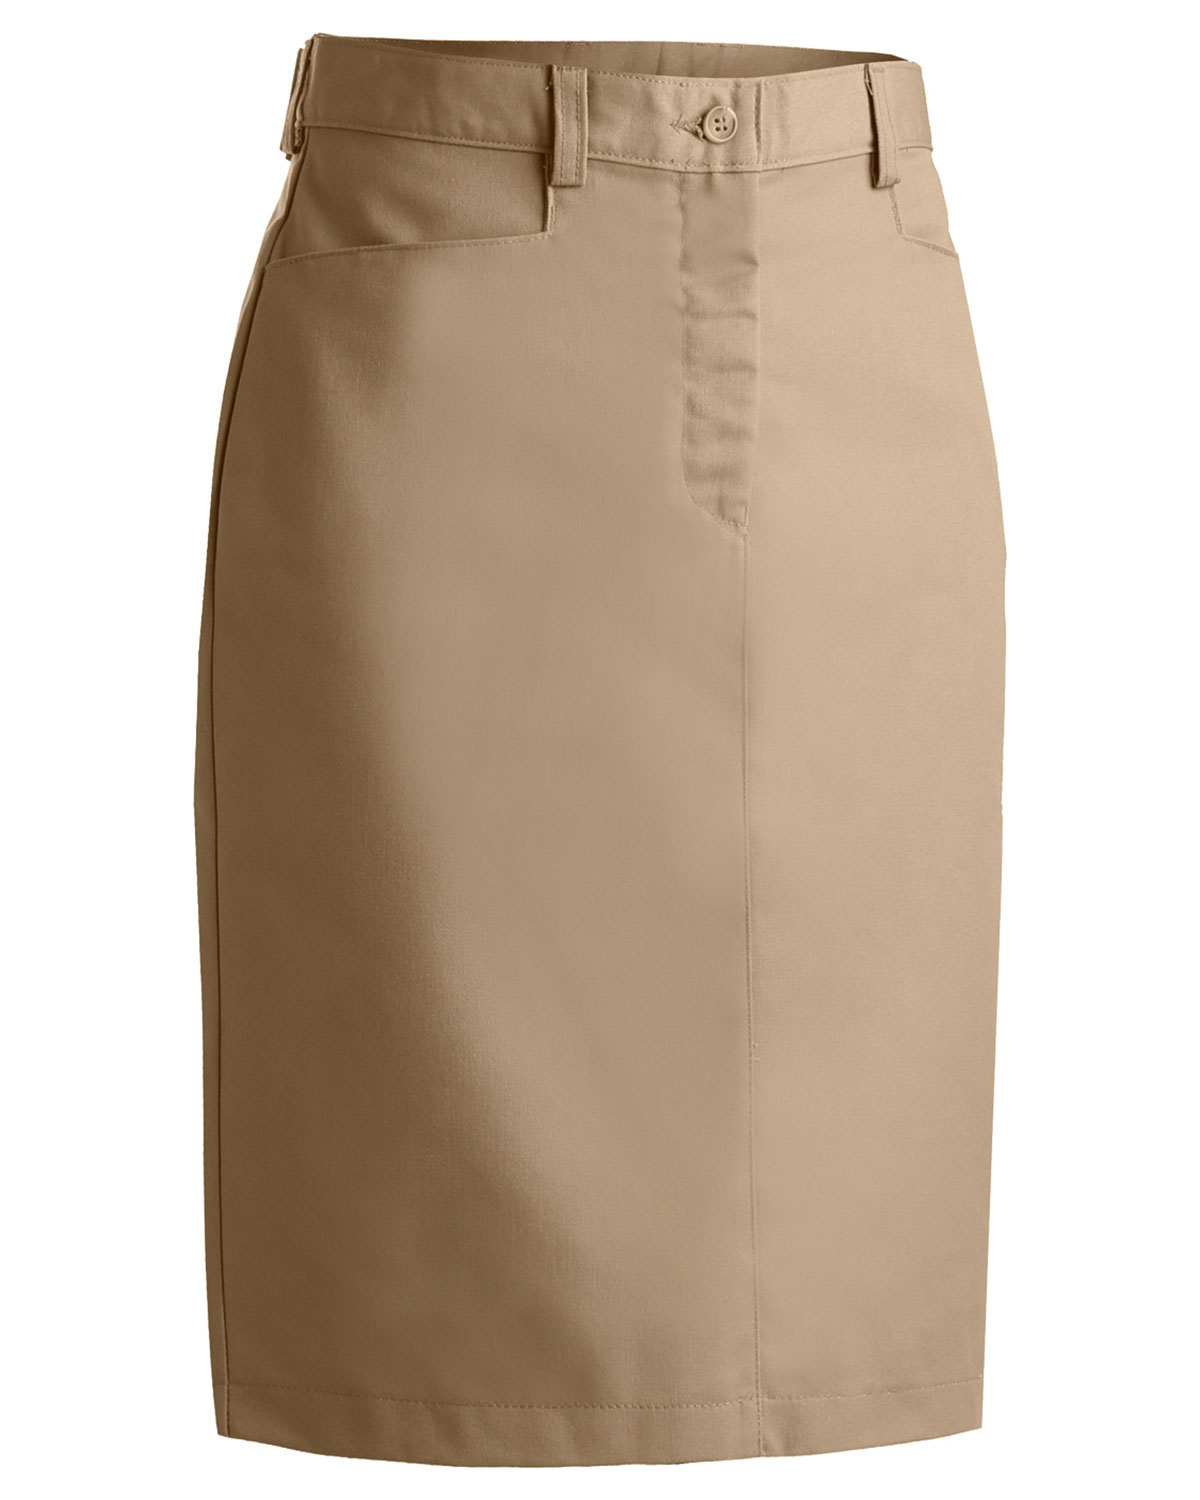 Edwards 9711 Women Chino Skirt Medium 25